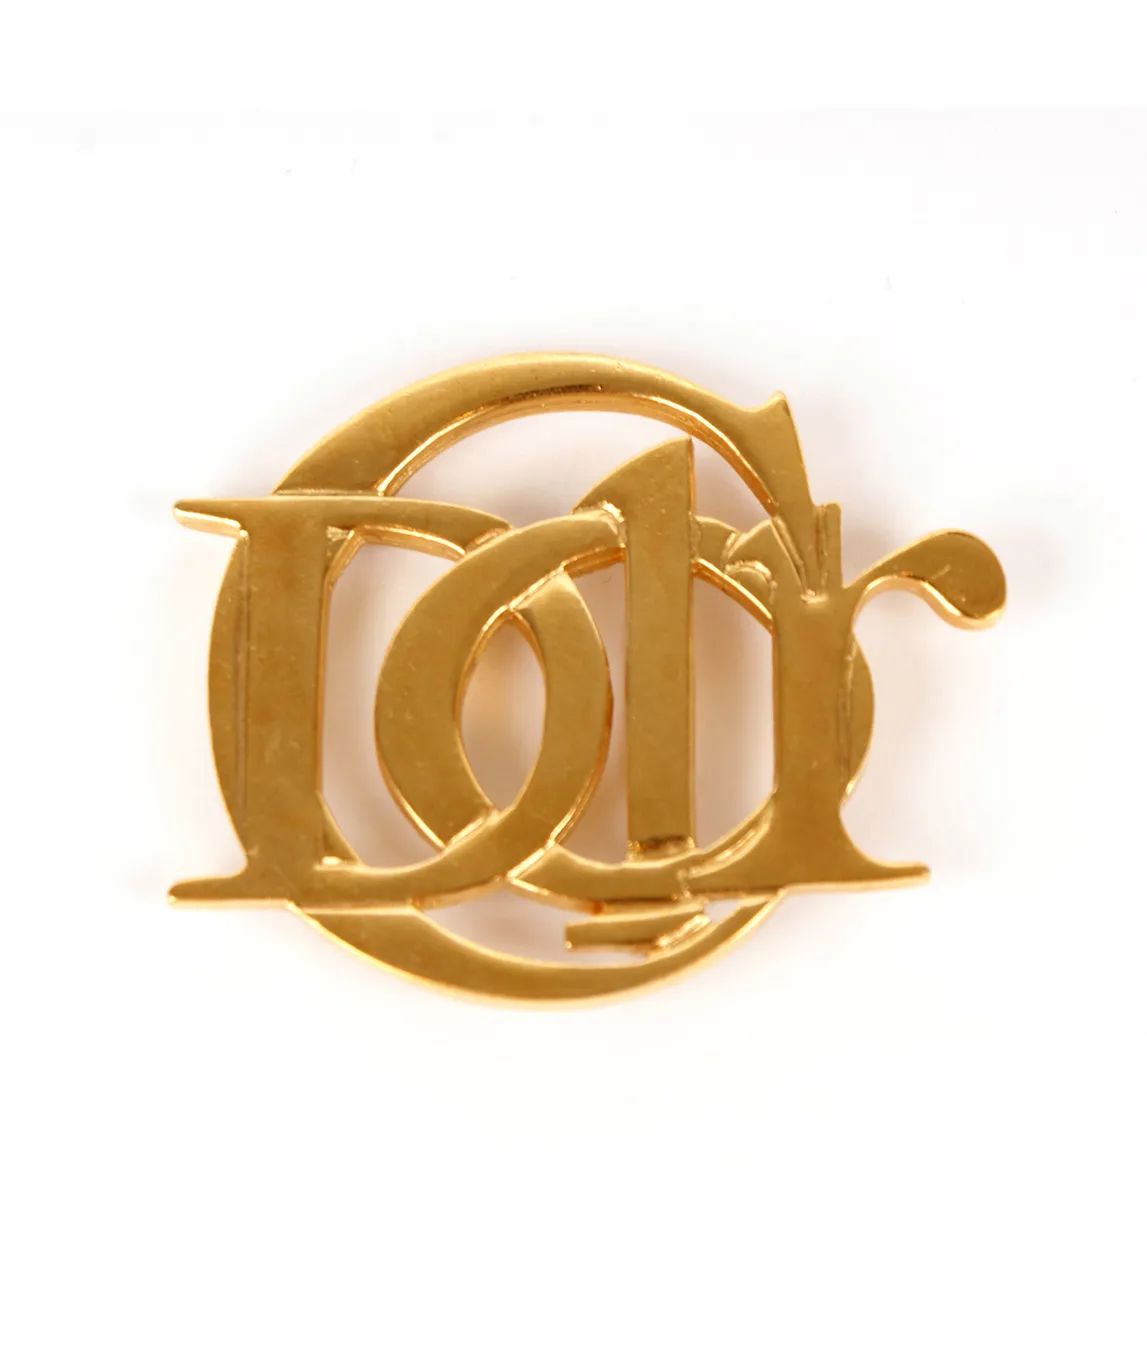 Dior logo brooch